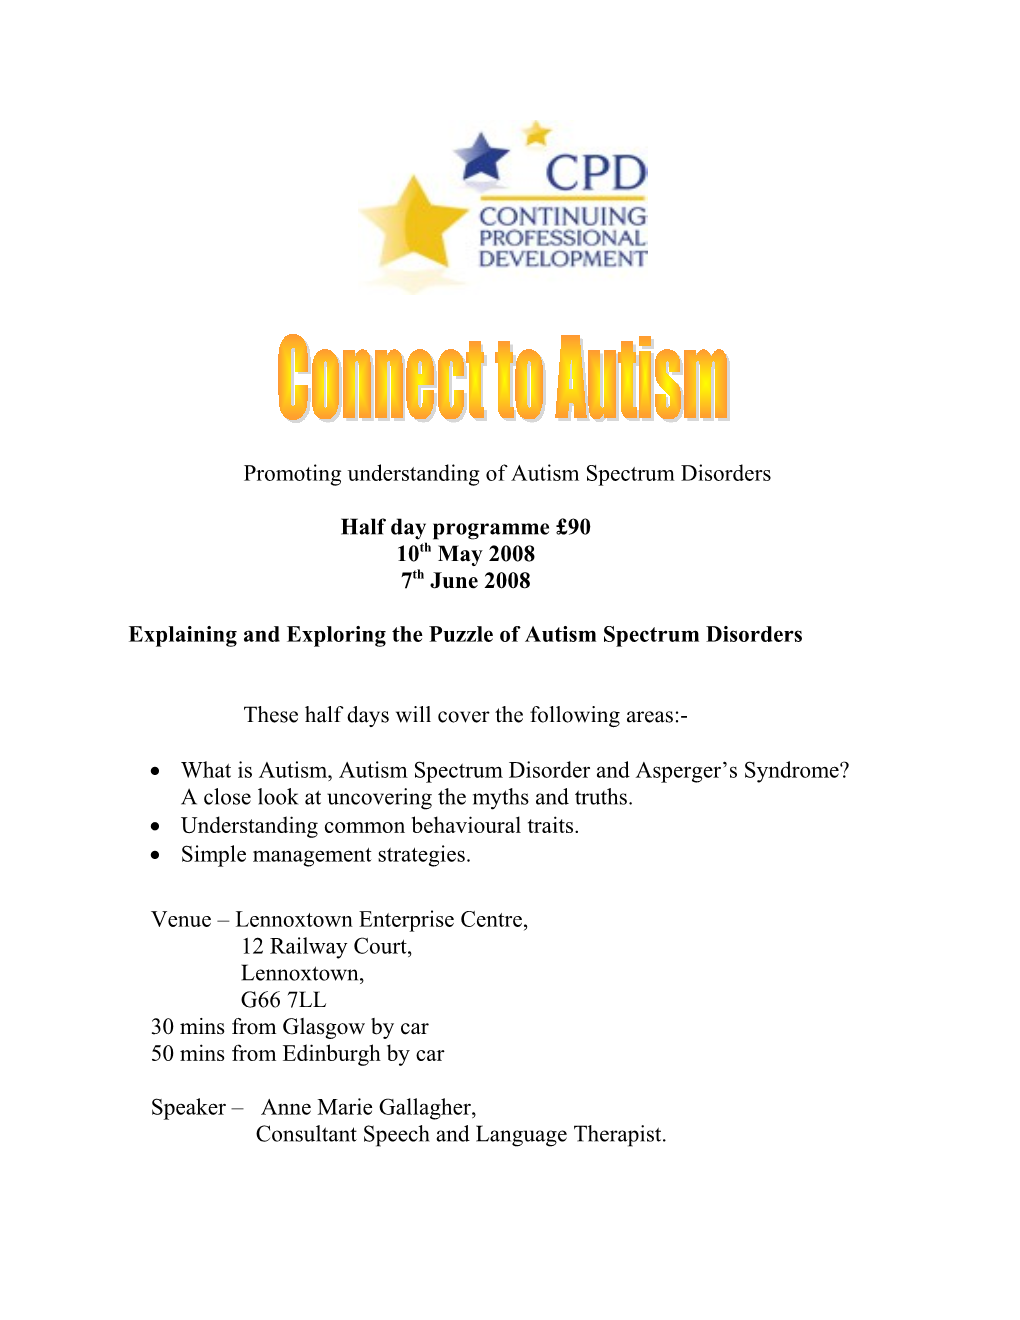 Promoting Understanding of Autism Spectrum Disorders